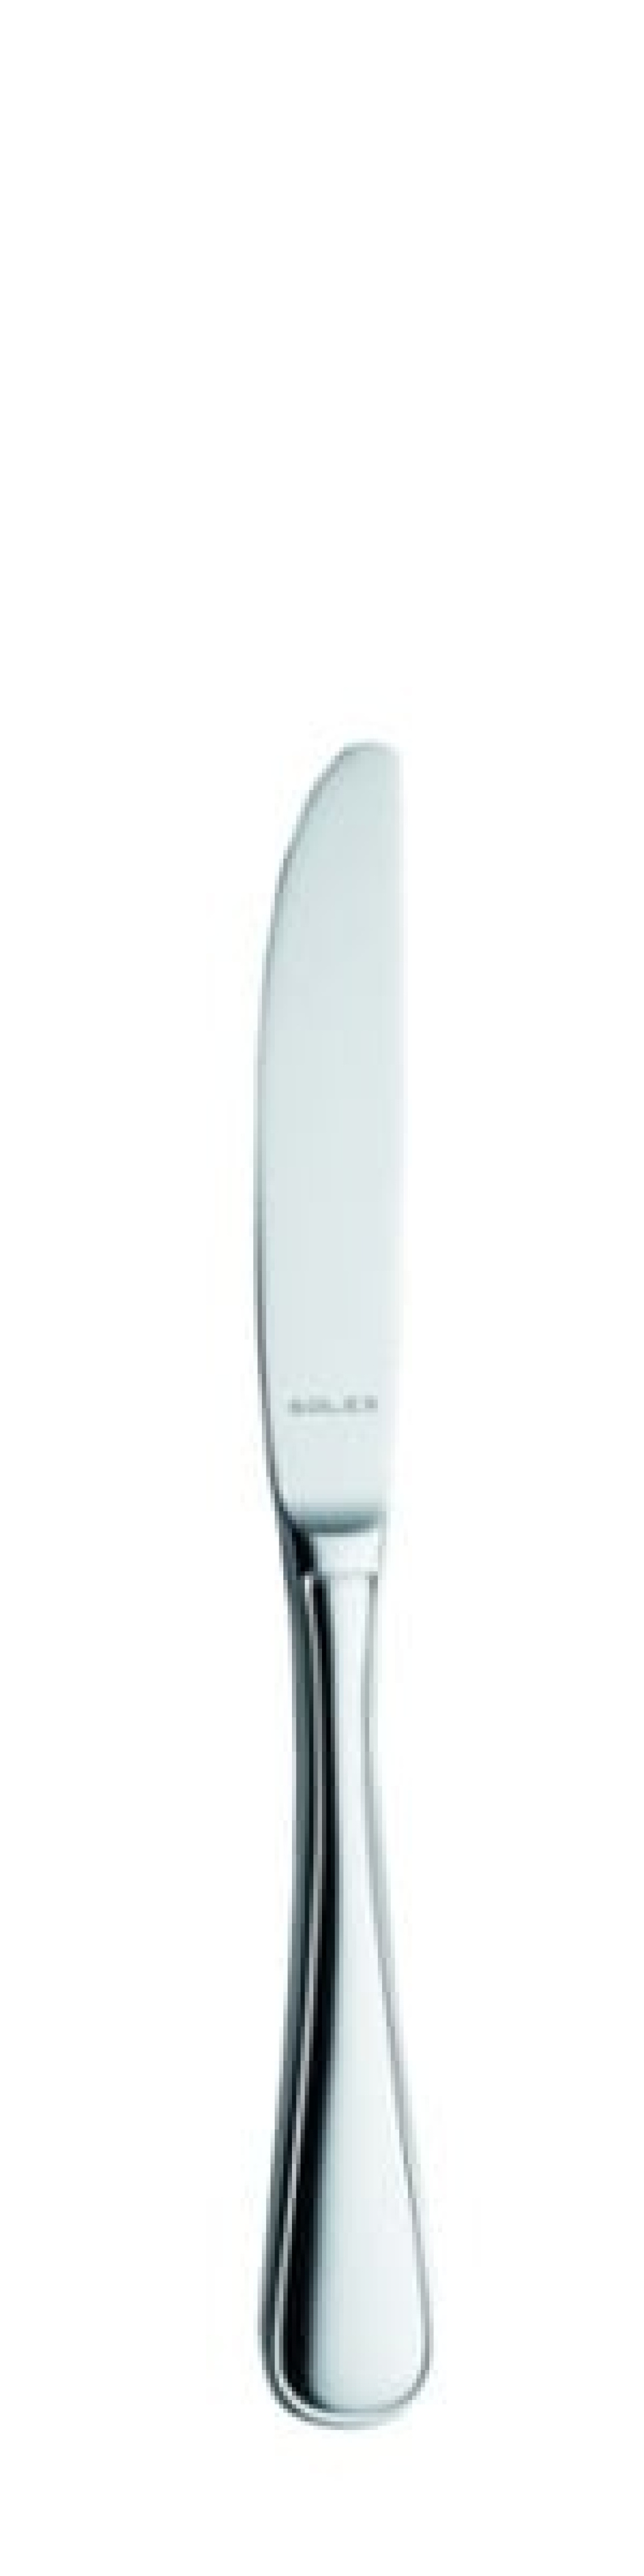 Selina Dessertmesser 211 mm - Solex in der Gruppe Tischgedeck / Besteck / Messer bei The Kitchen Lab (1284-21523)